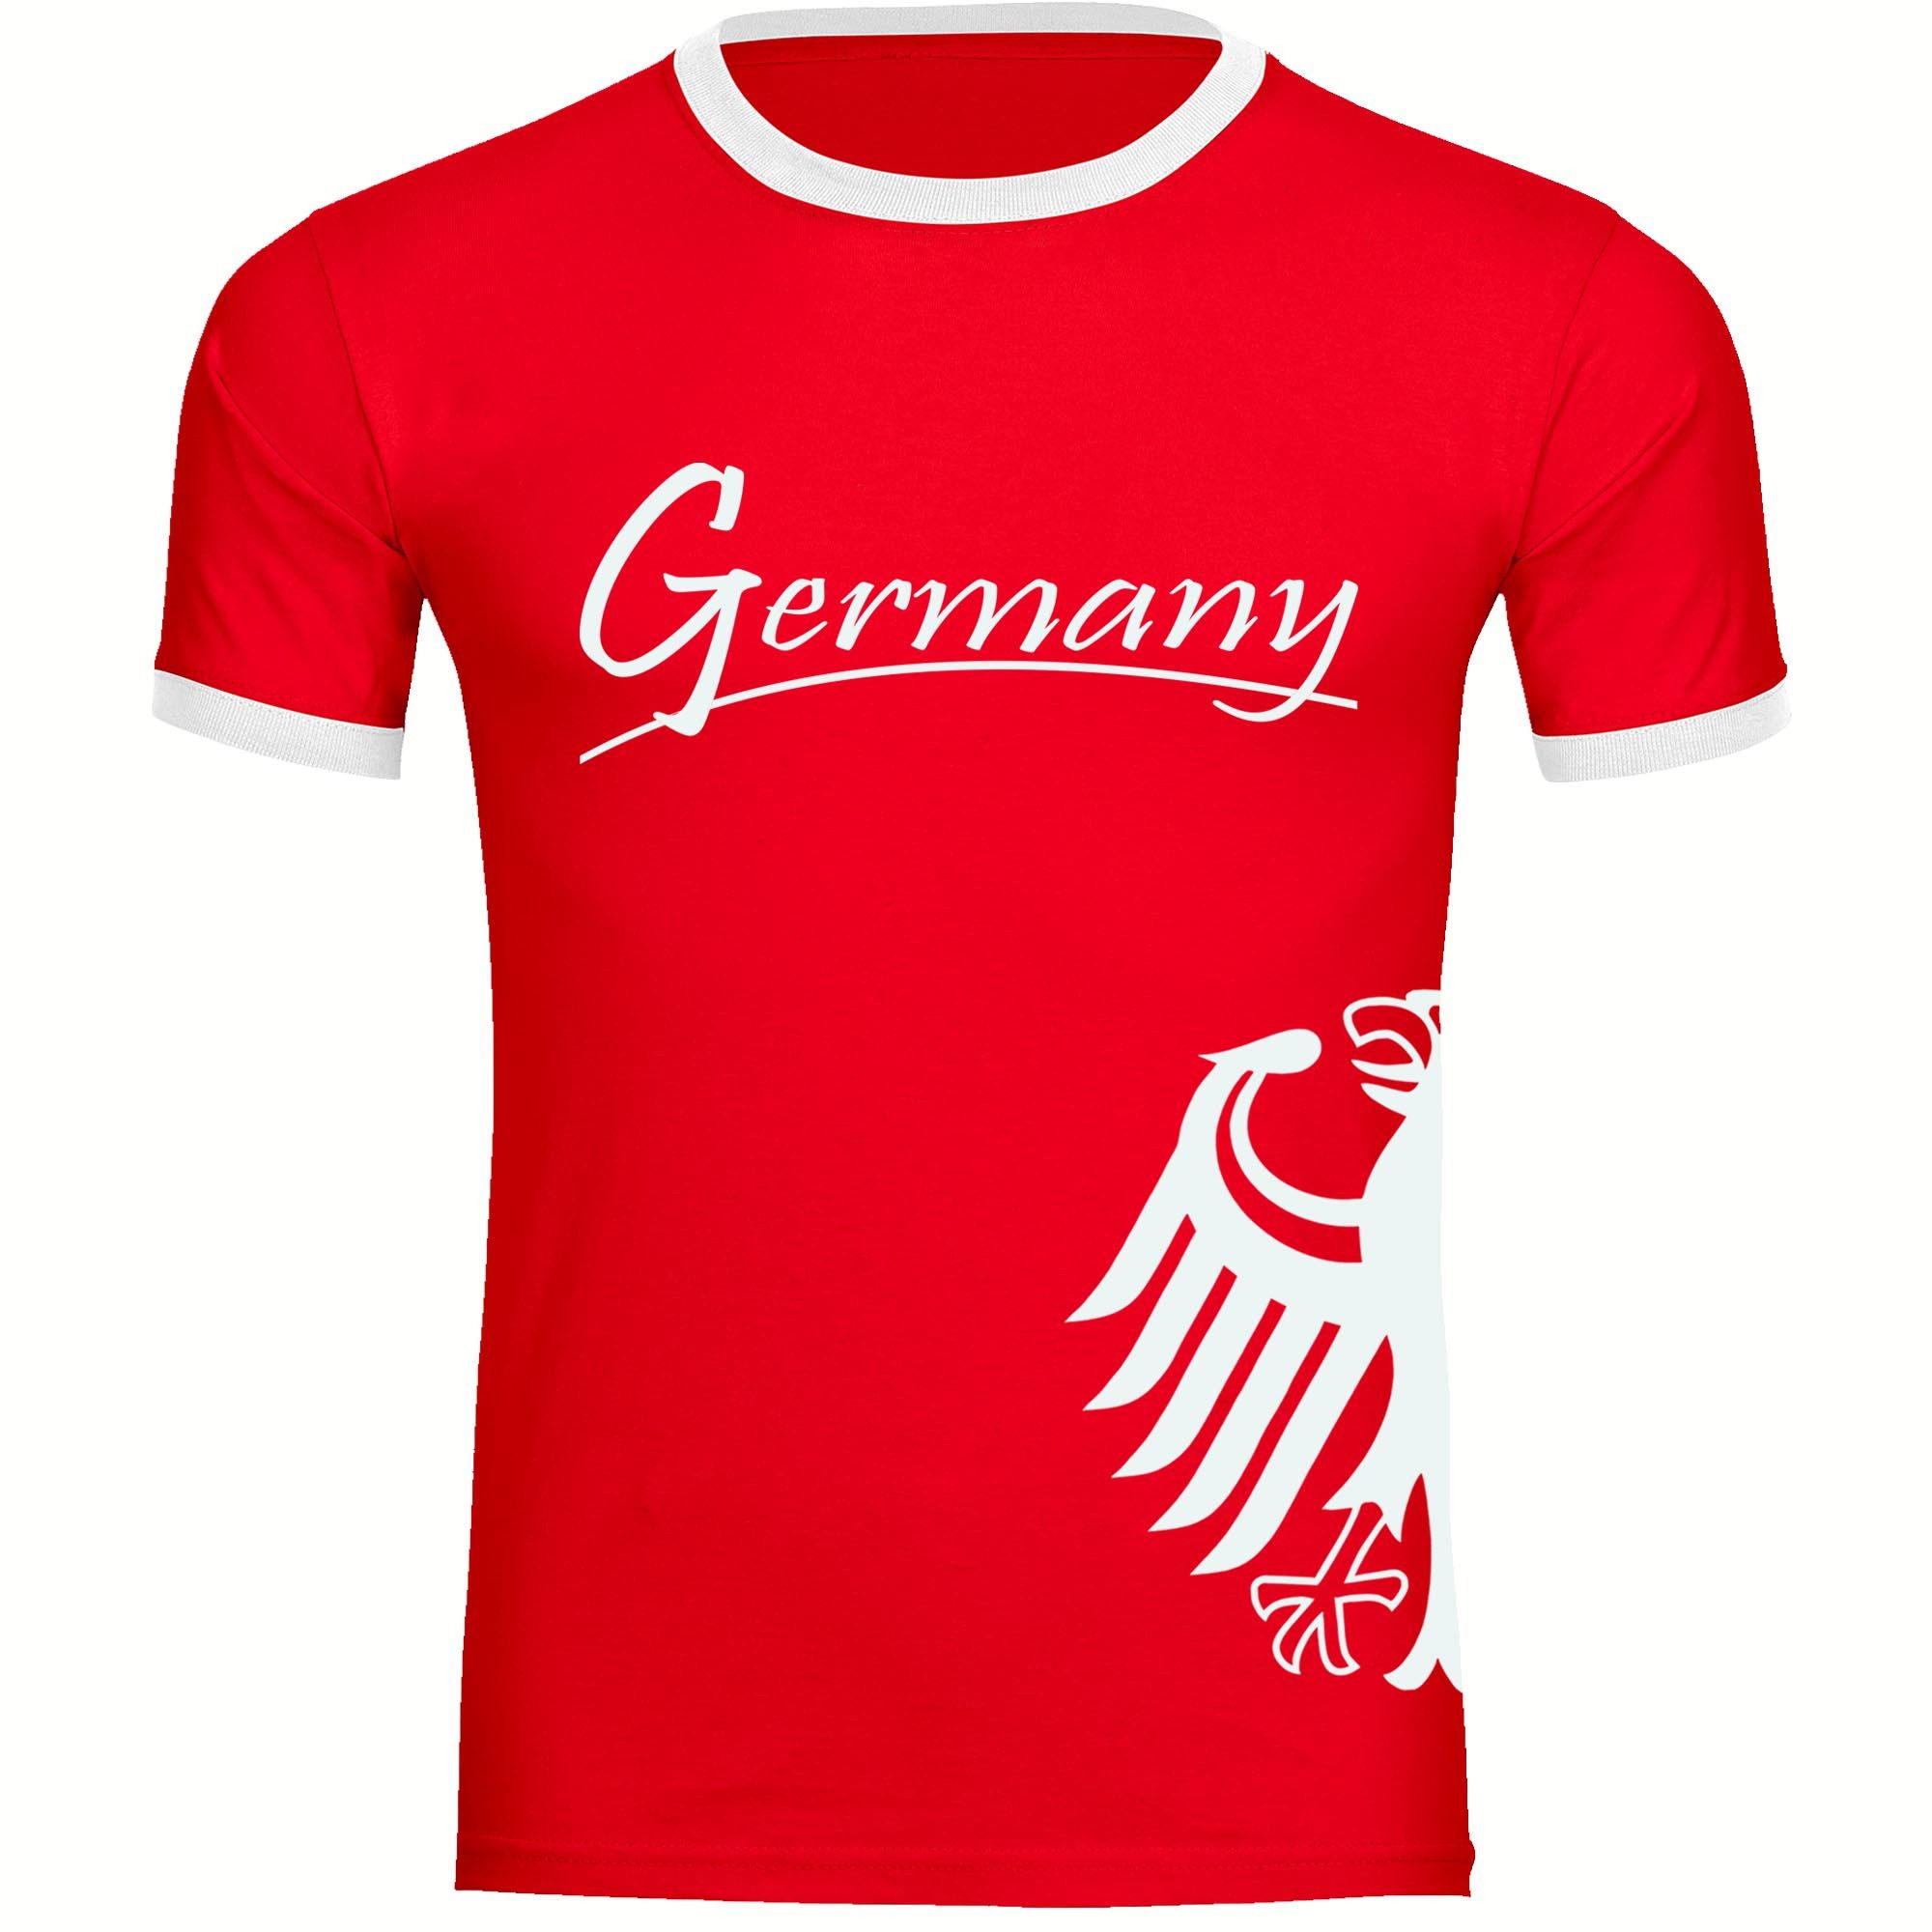 multifanshop T-Shirt Kontrast Germany - Adler seitlich - Männer